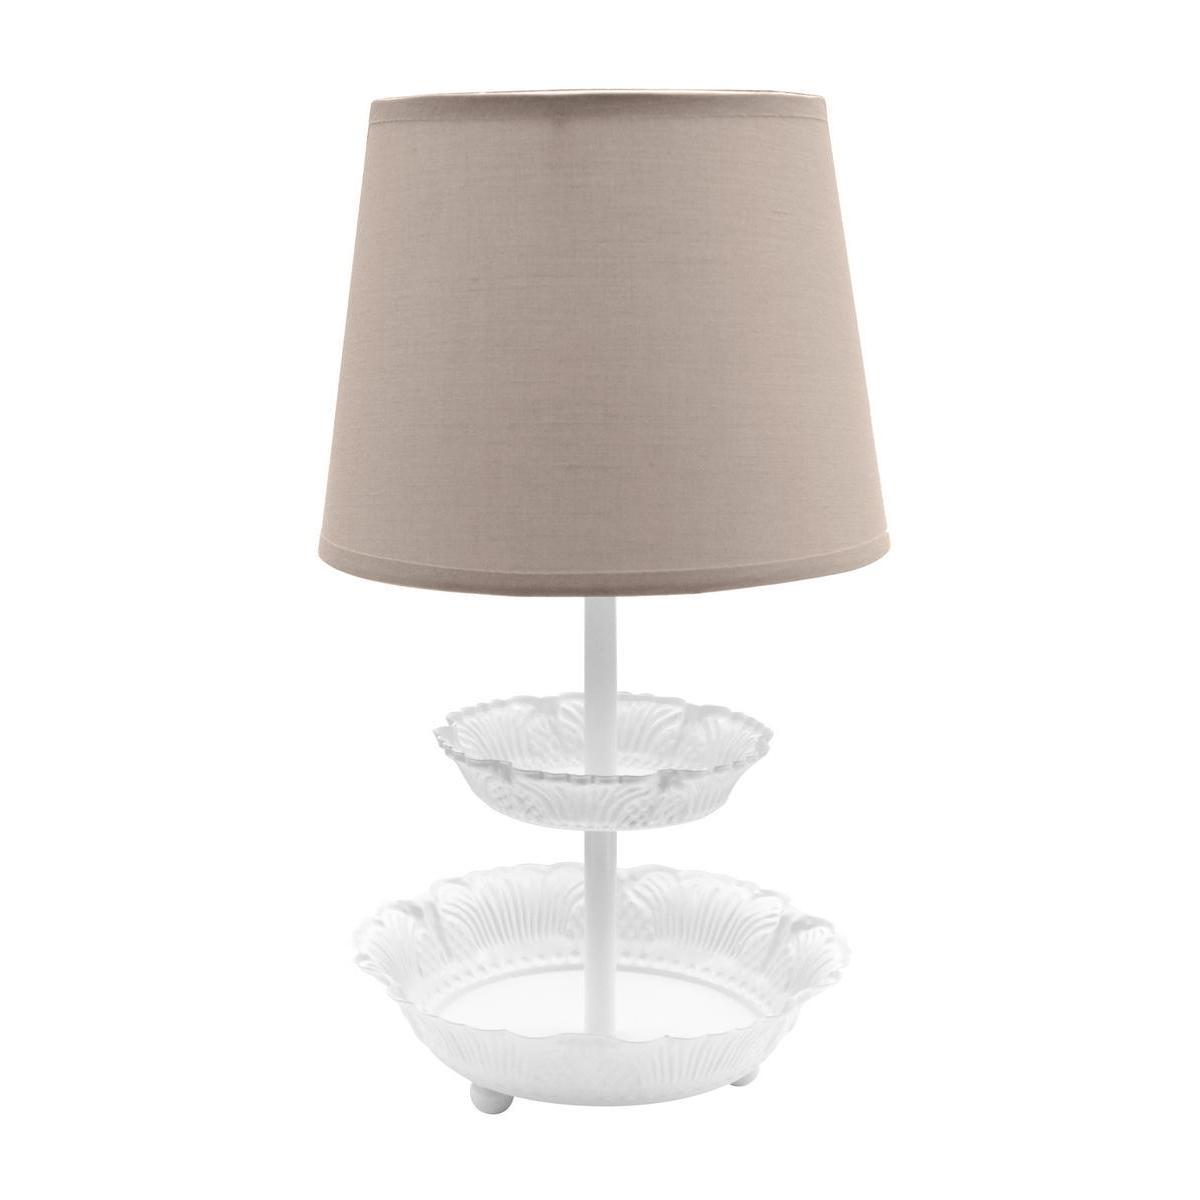 Lampe à poser avec plateaux - Acier et polyester - Ø 19,5 x H 35 cm - Taupe